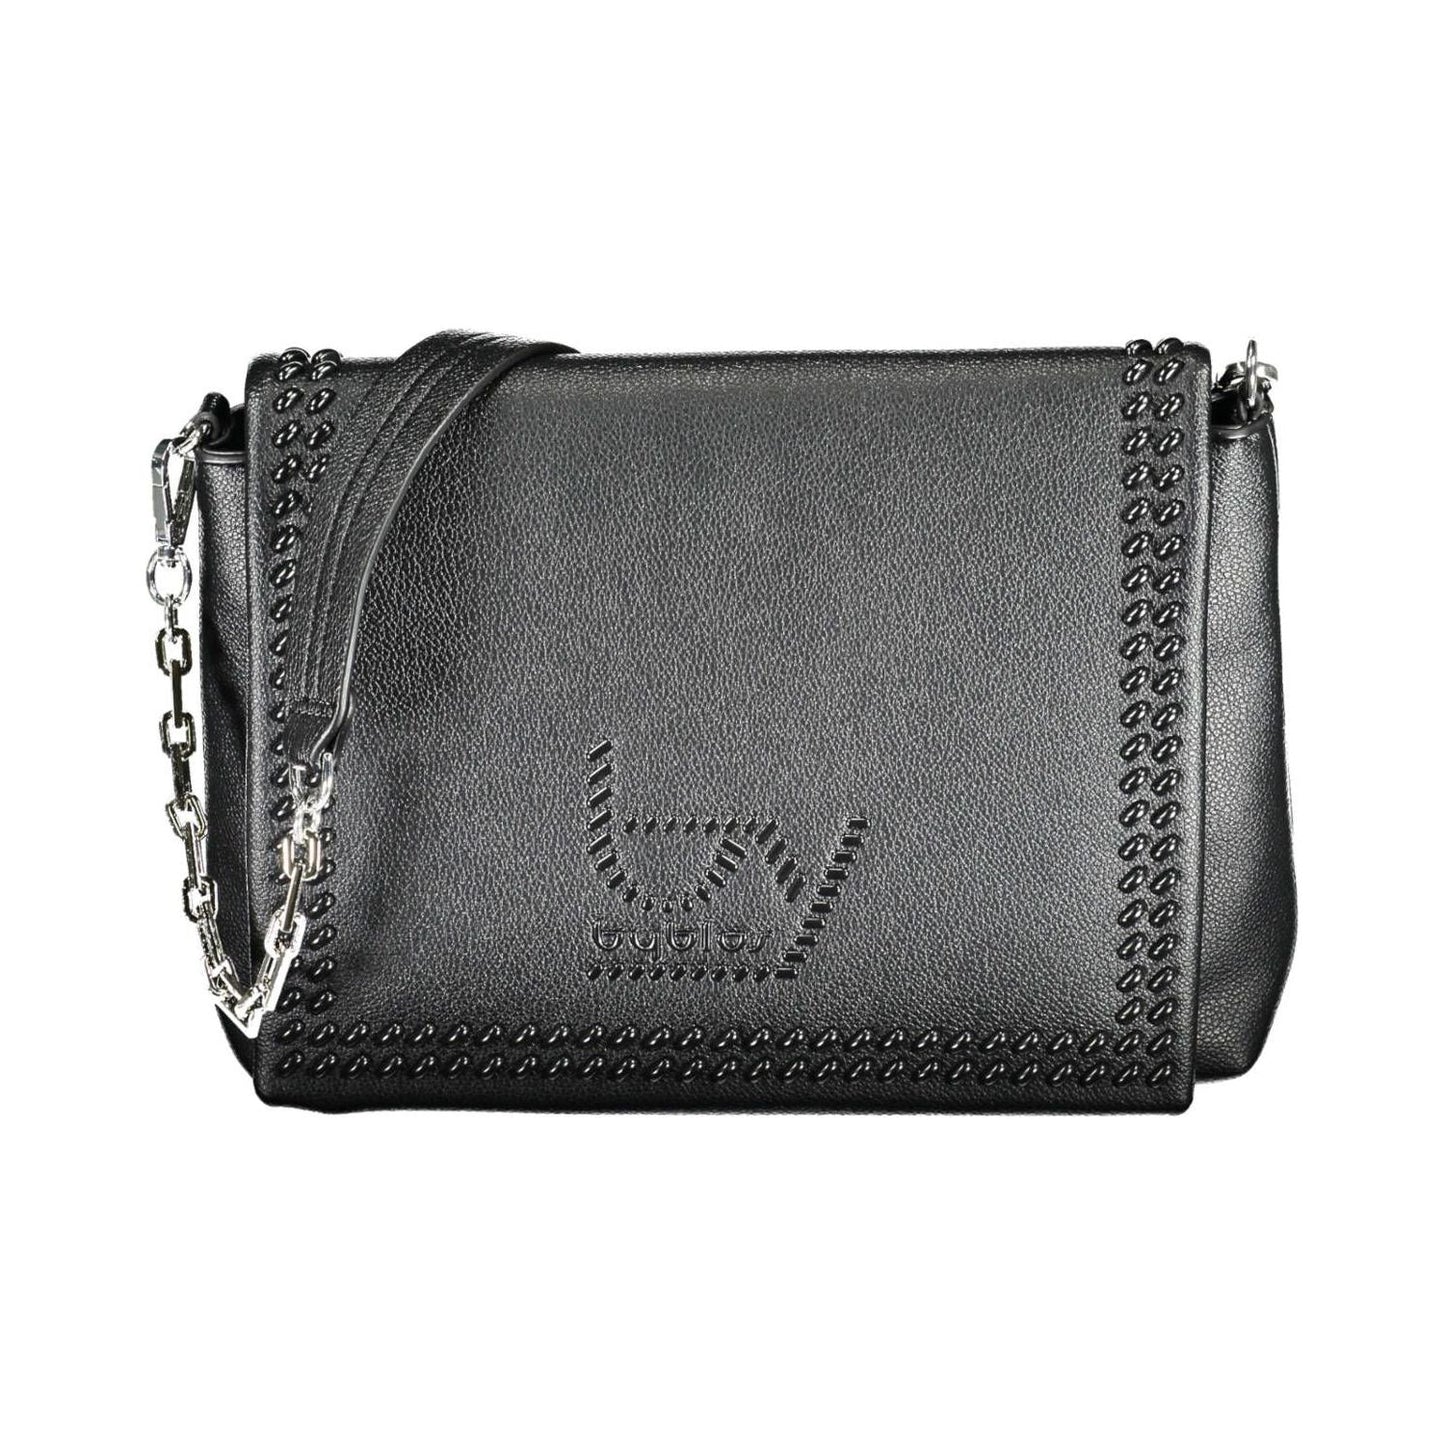 BYBLOS Elegant Chain-Handle Black Shoulder Bag elegant-chain-handle-black-shoulder-bag-1